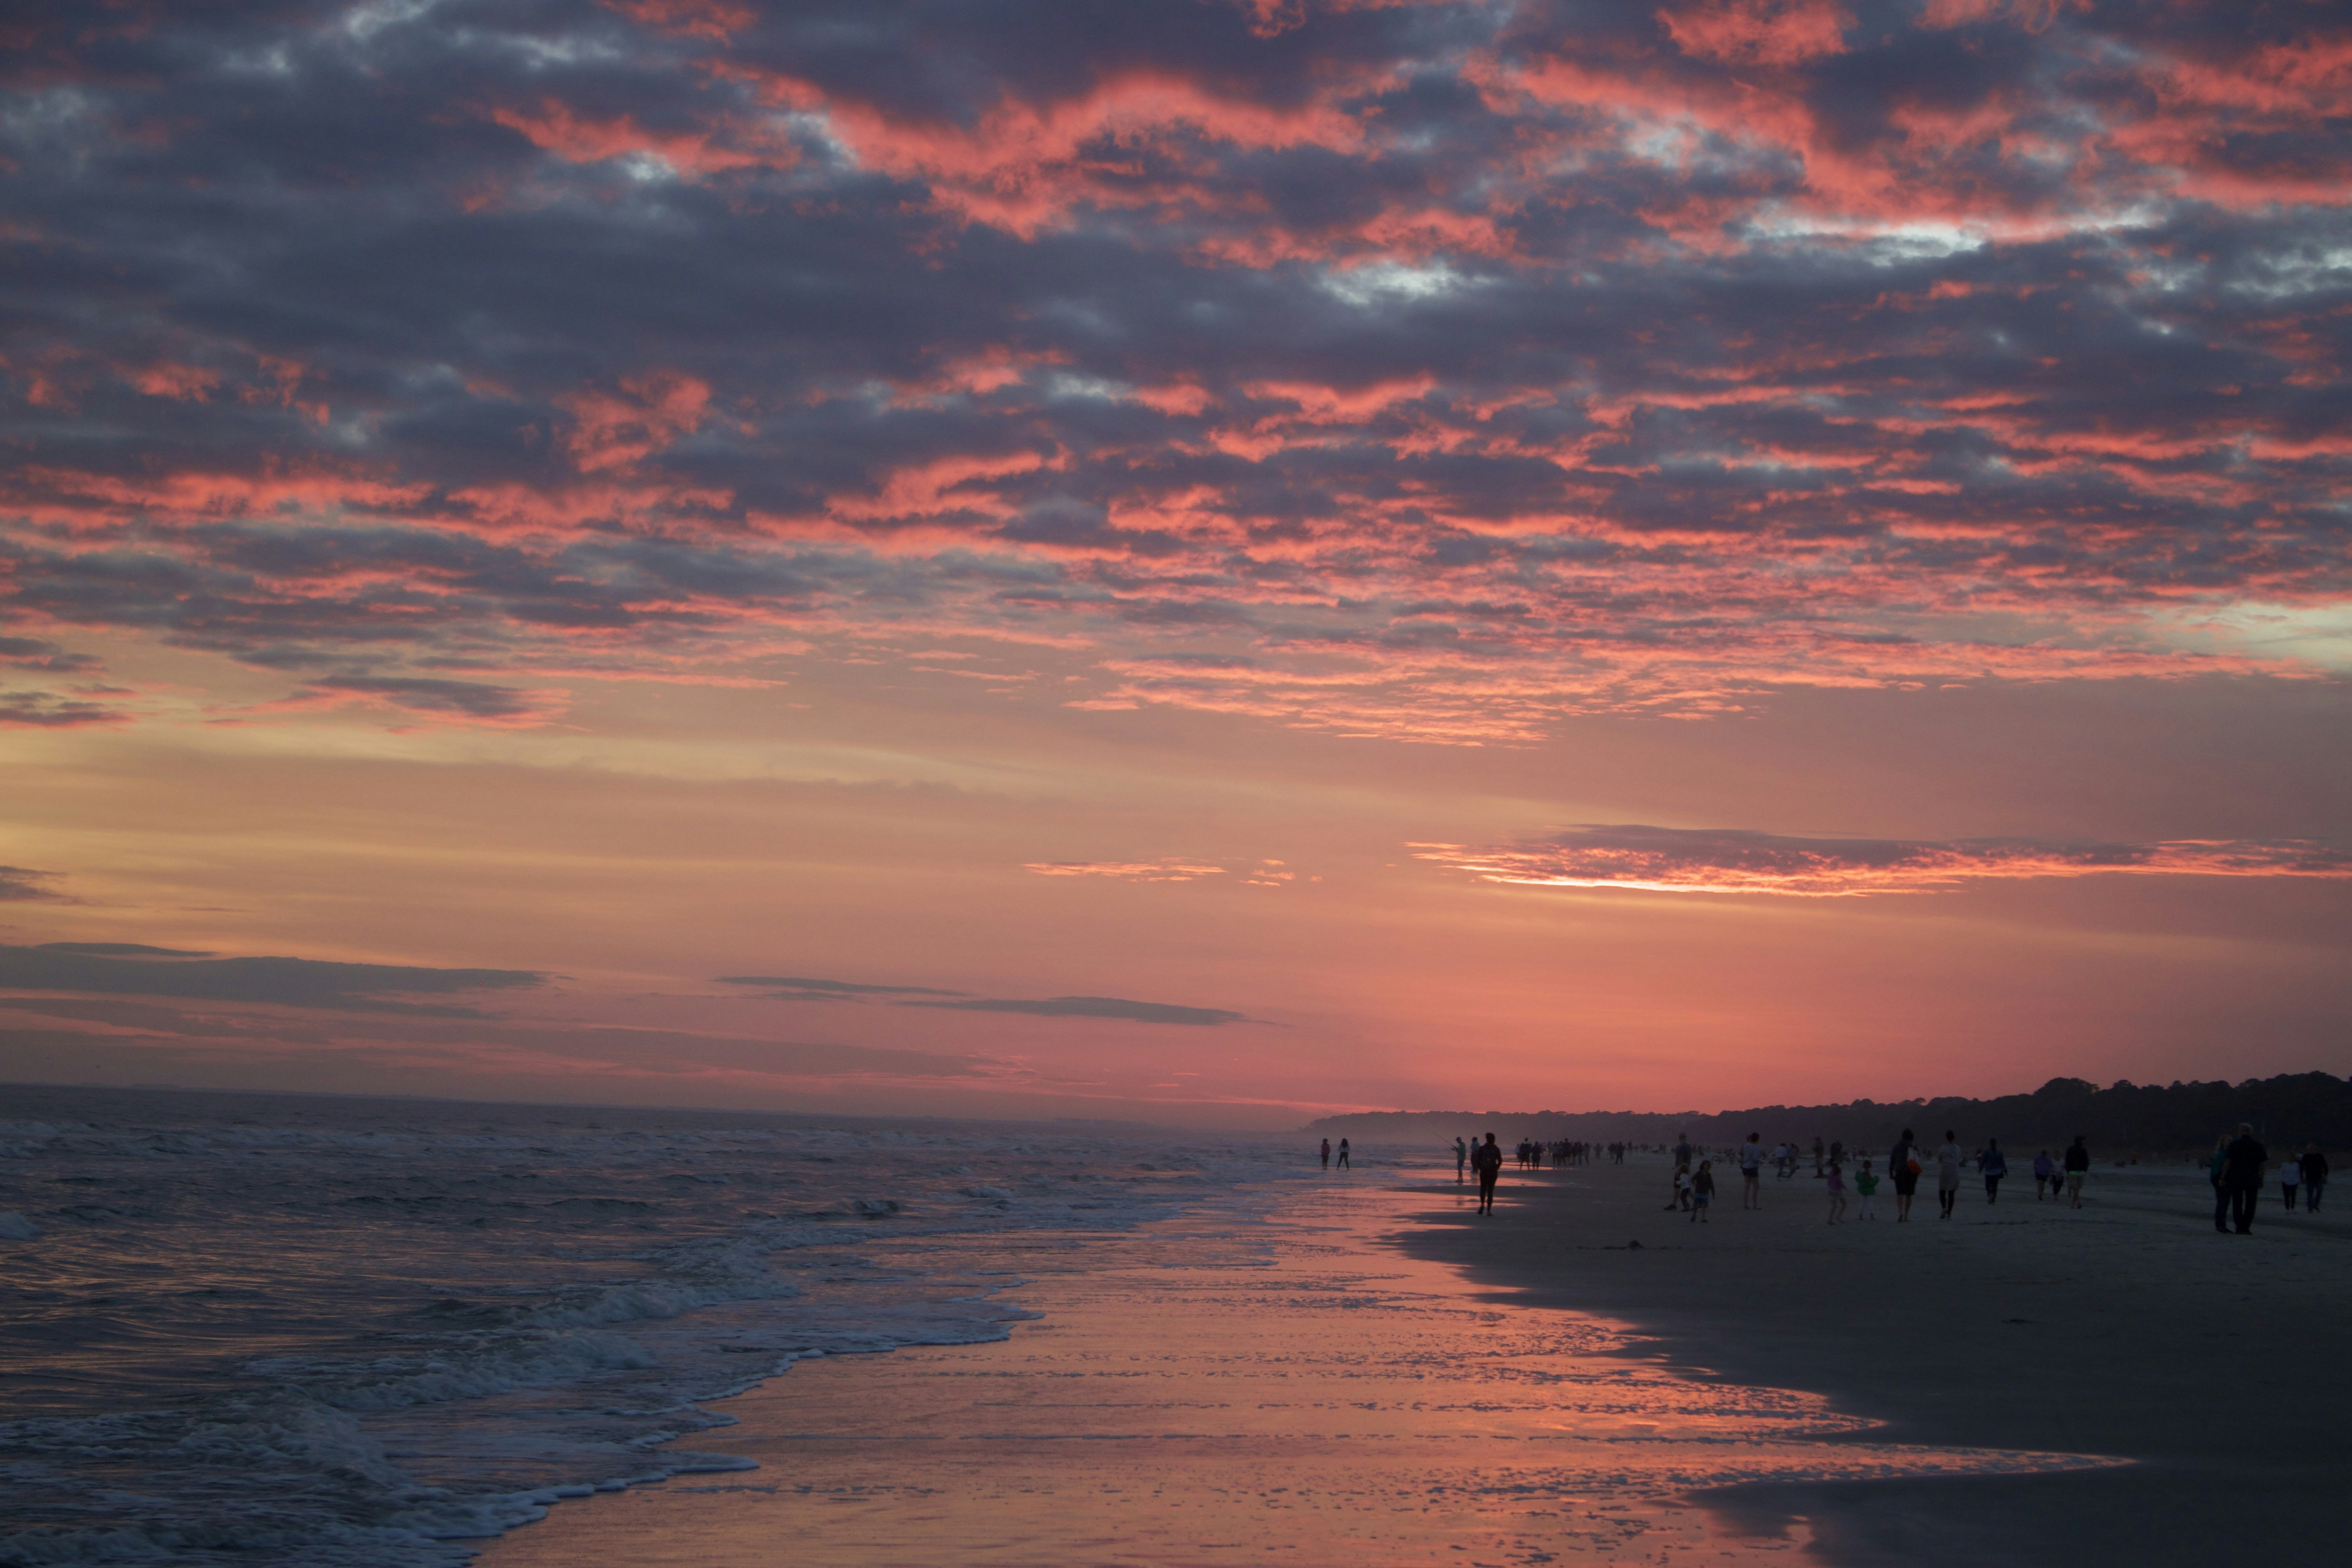 Sunset on Atlantic Ocean in December 2021